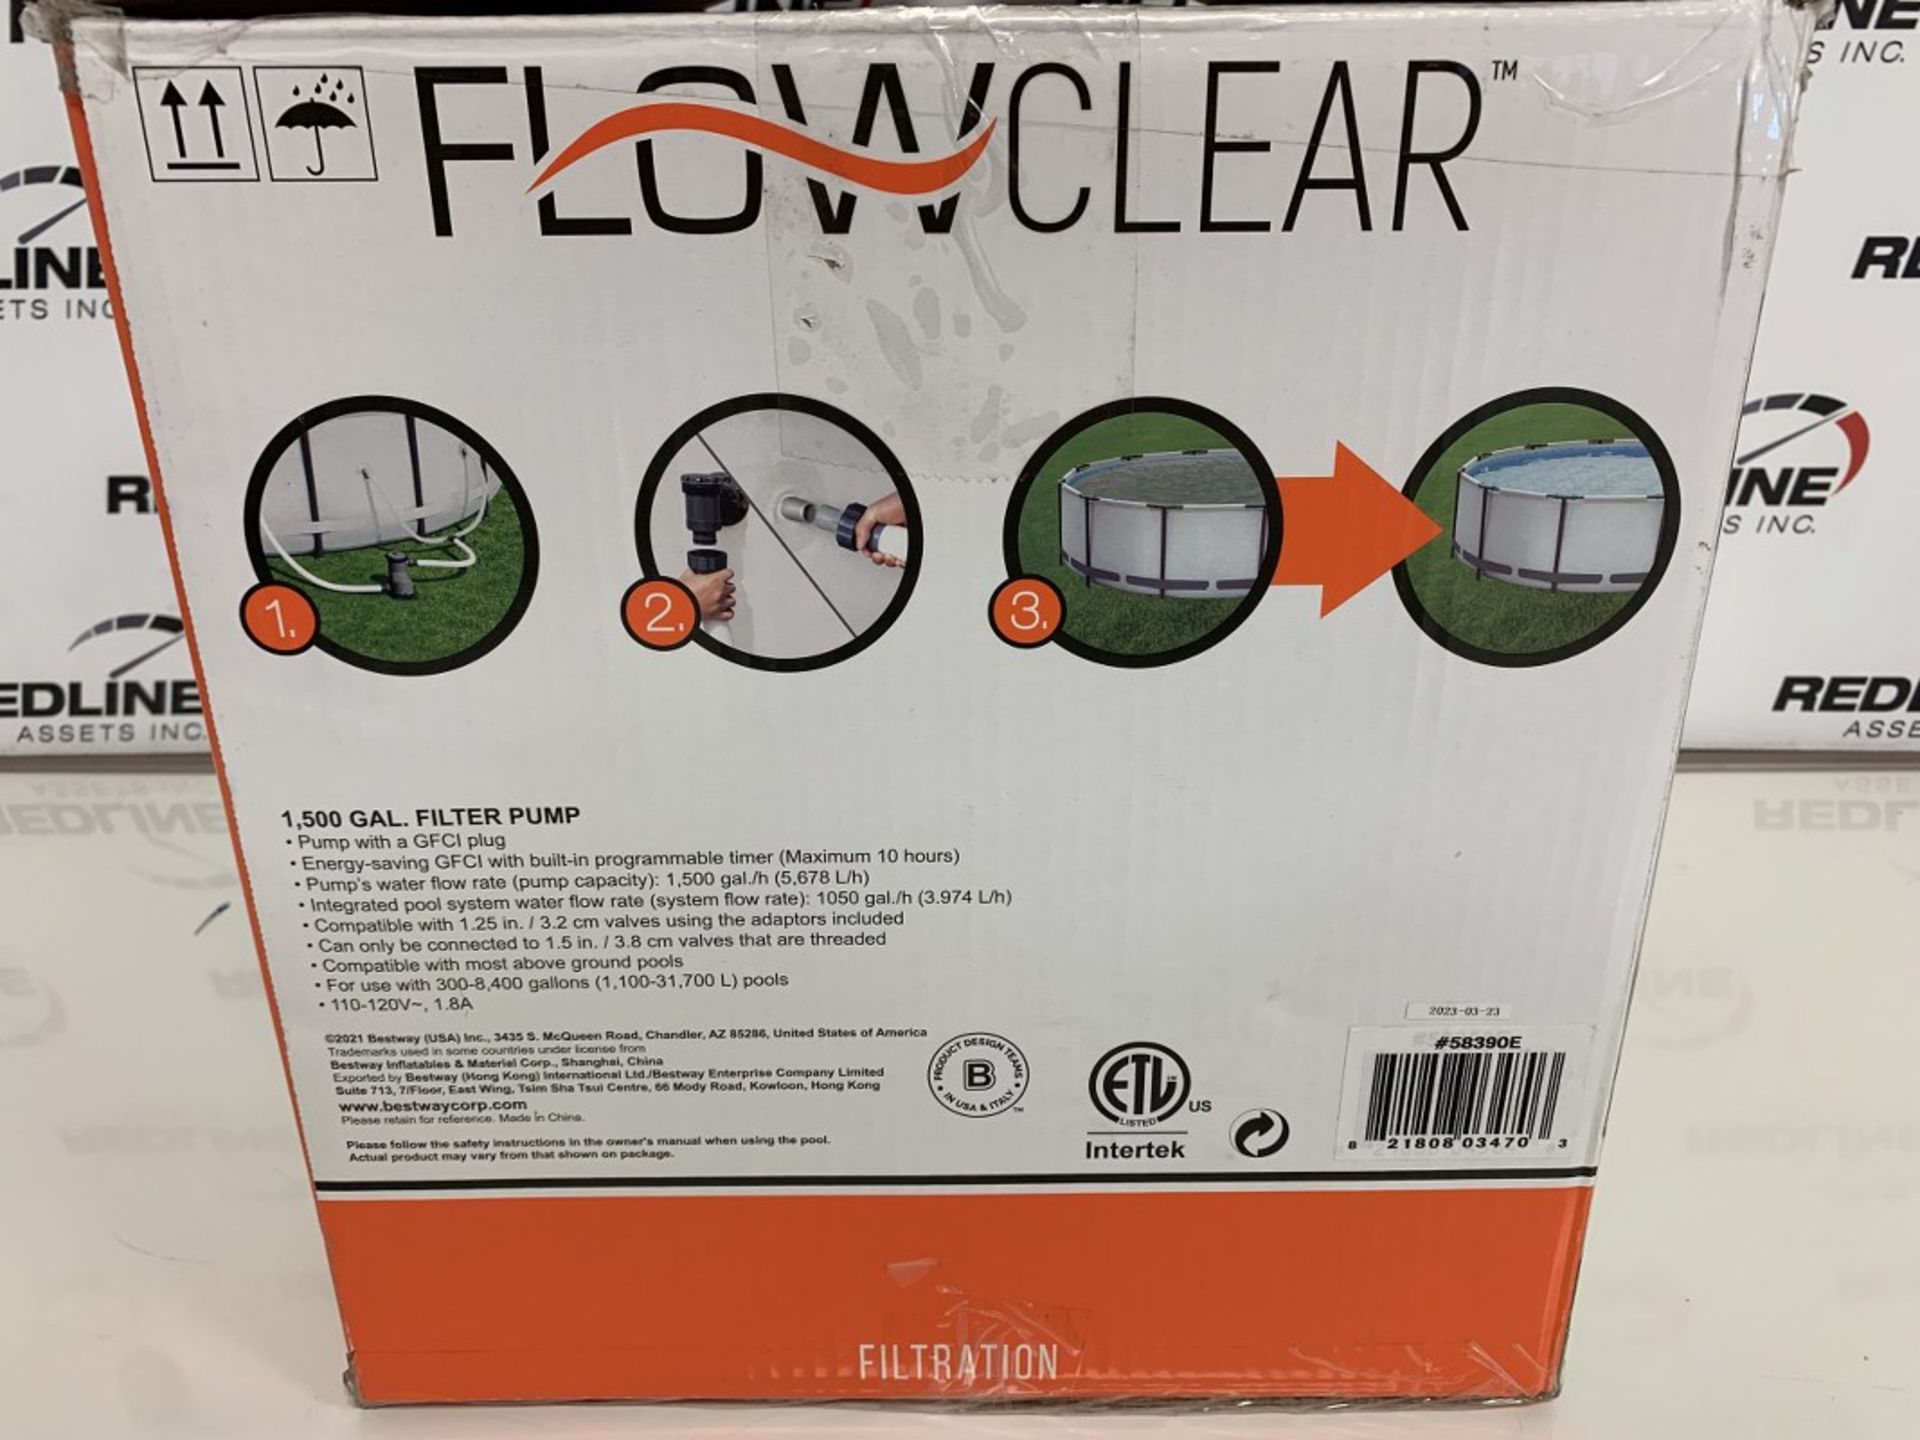 Flowclear - 1500 Gal Bestway Filter Pump - Image 2 of 2